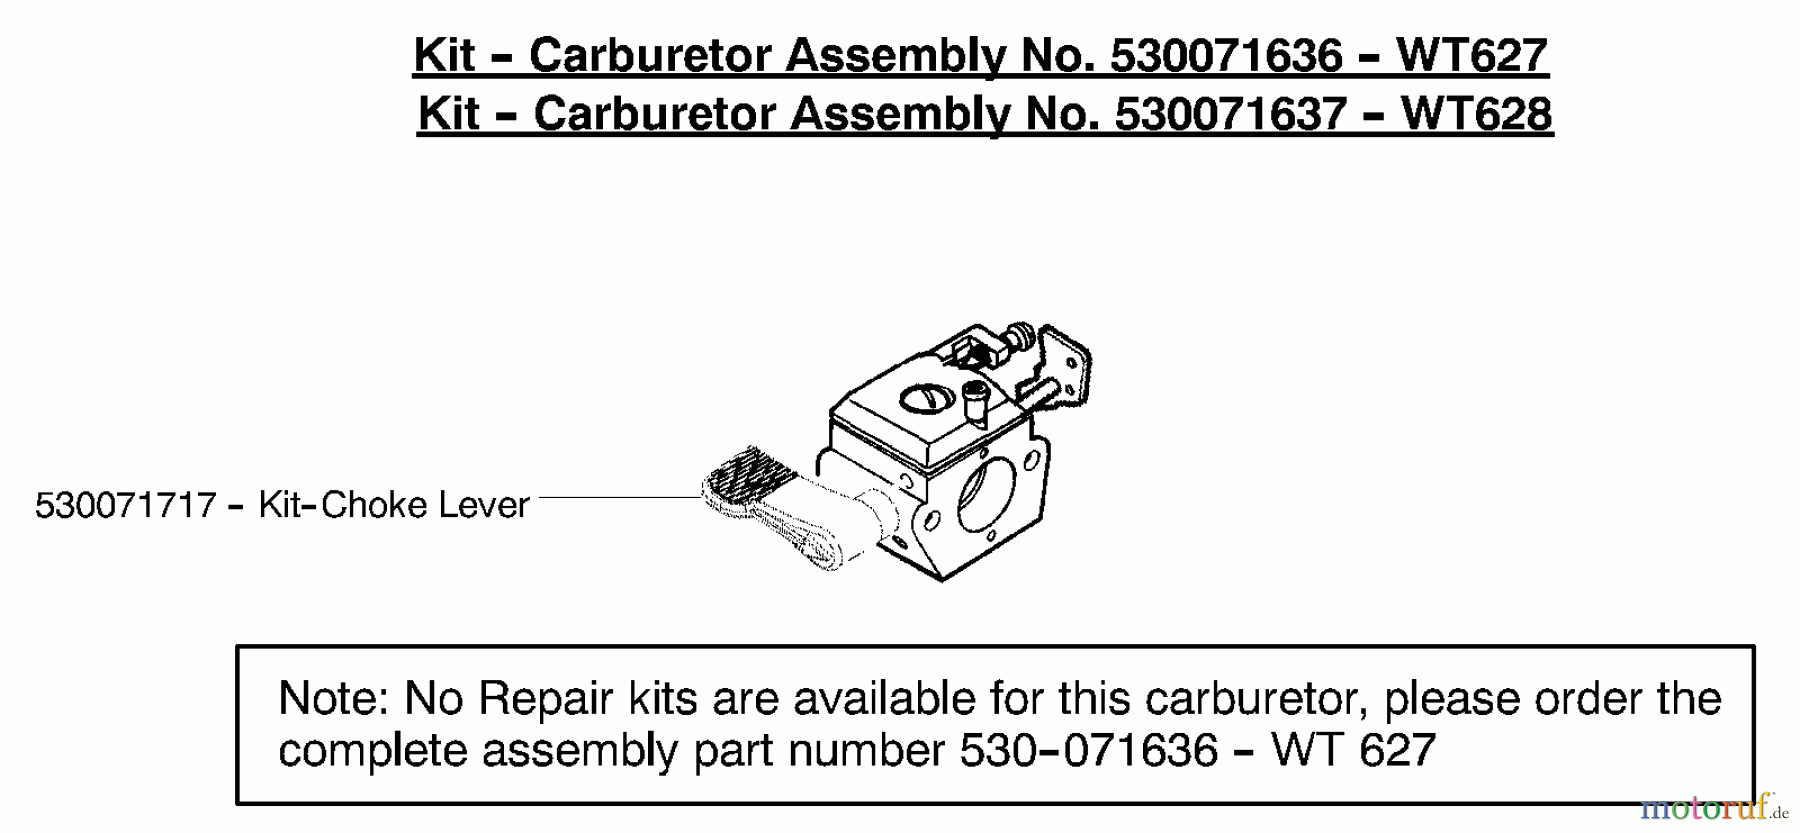  Poulan / Weed Eater Motorsensen, Trimmer PP035 - Poulan Pro String Trimmer Carburetor Assembly (WT627) P/N 530071636